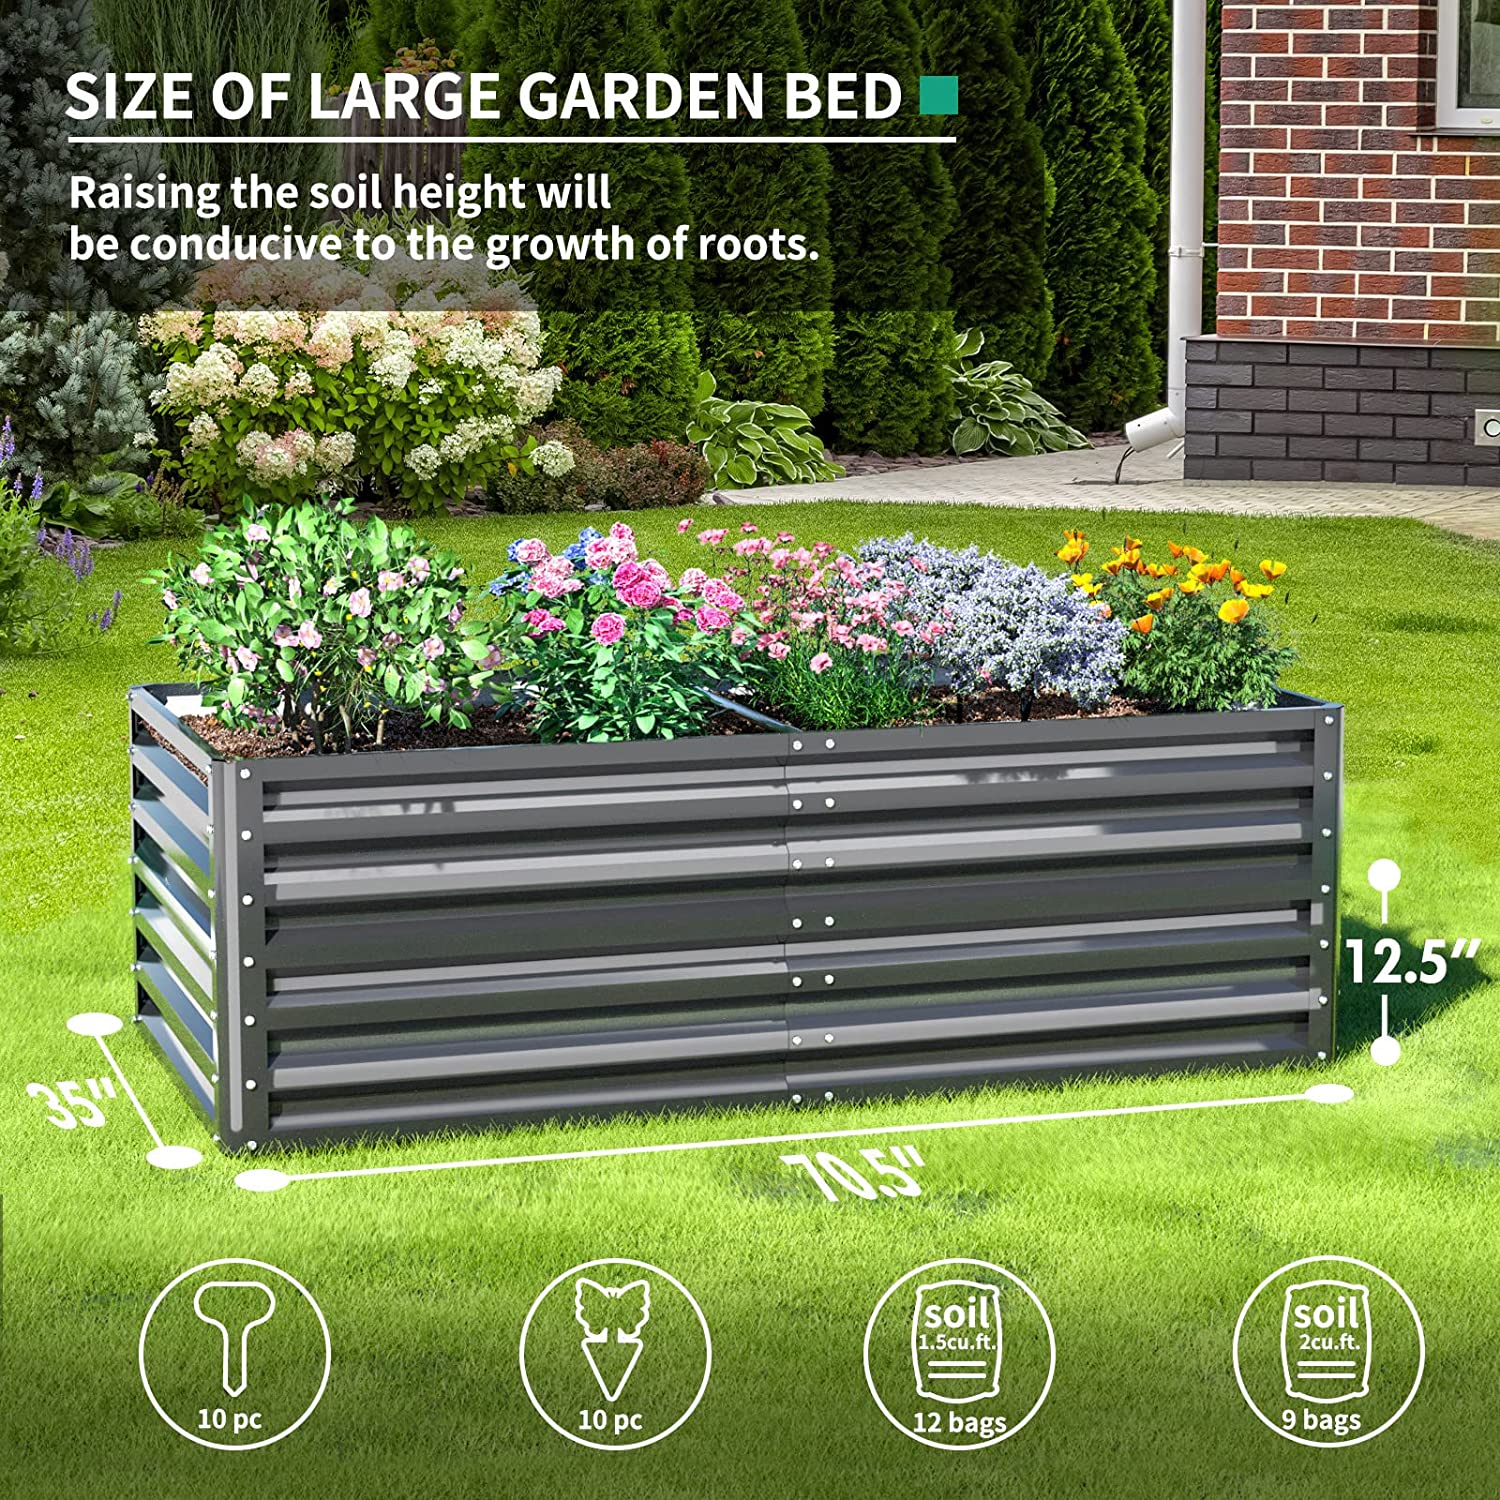 UDPATIO Galvanized Raised Garden Bed, 6x3x1 FT Outdoor Metal Garden ...